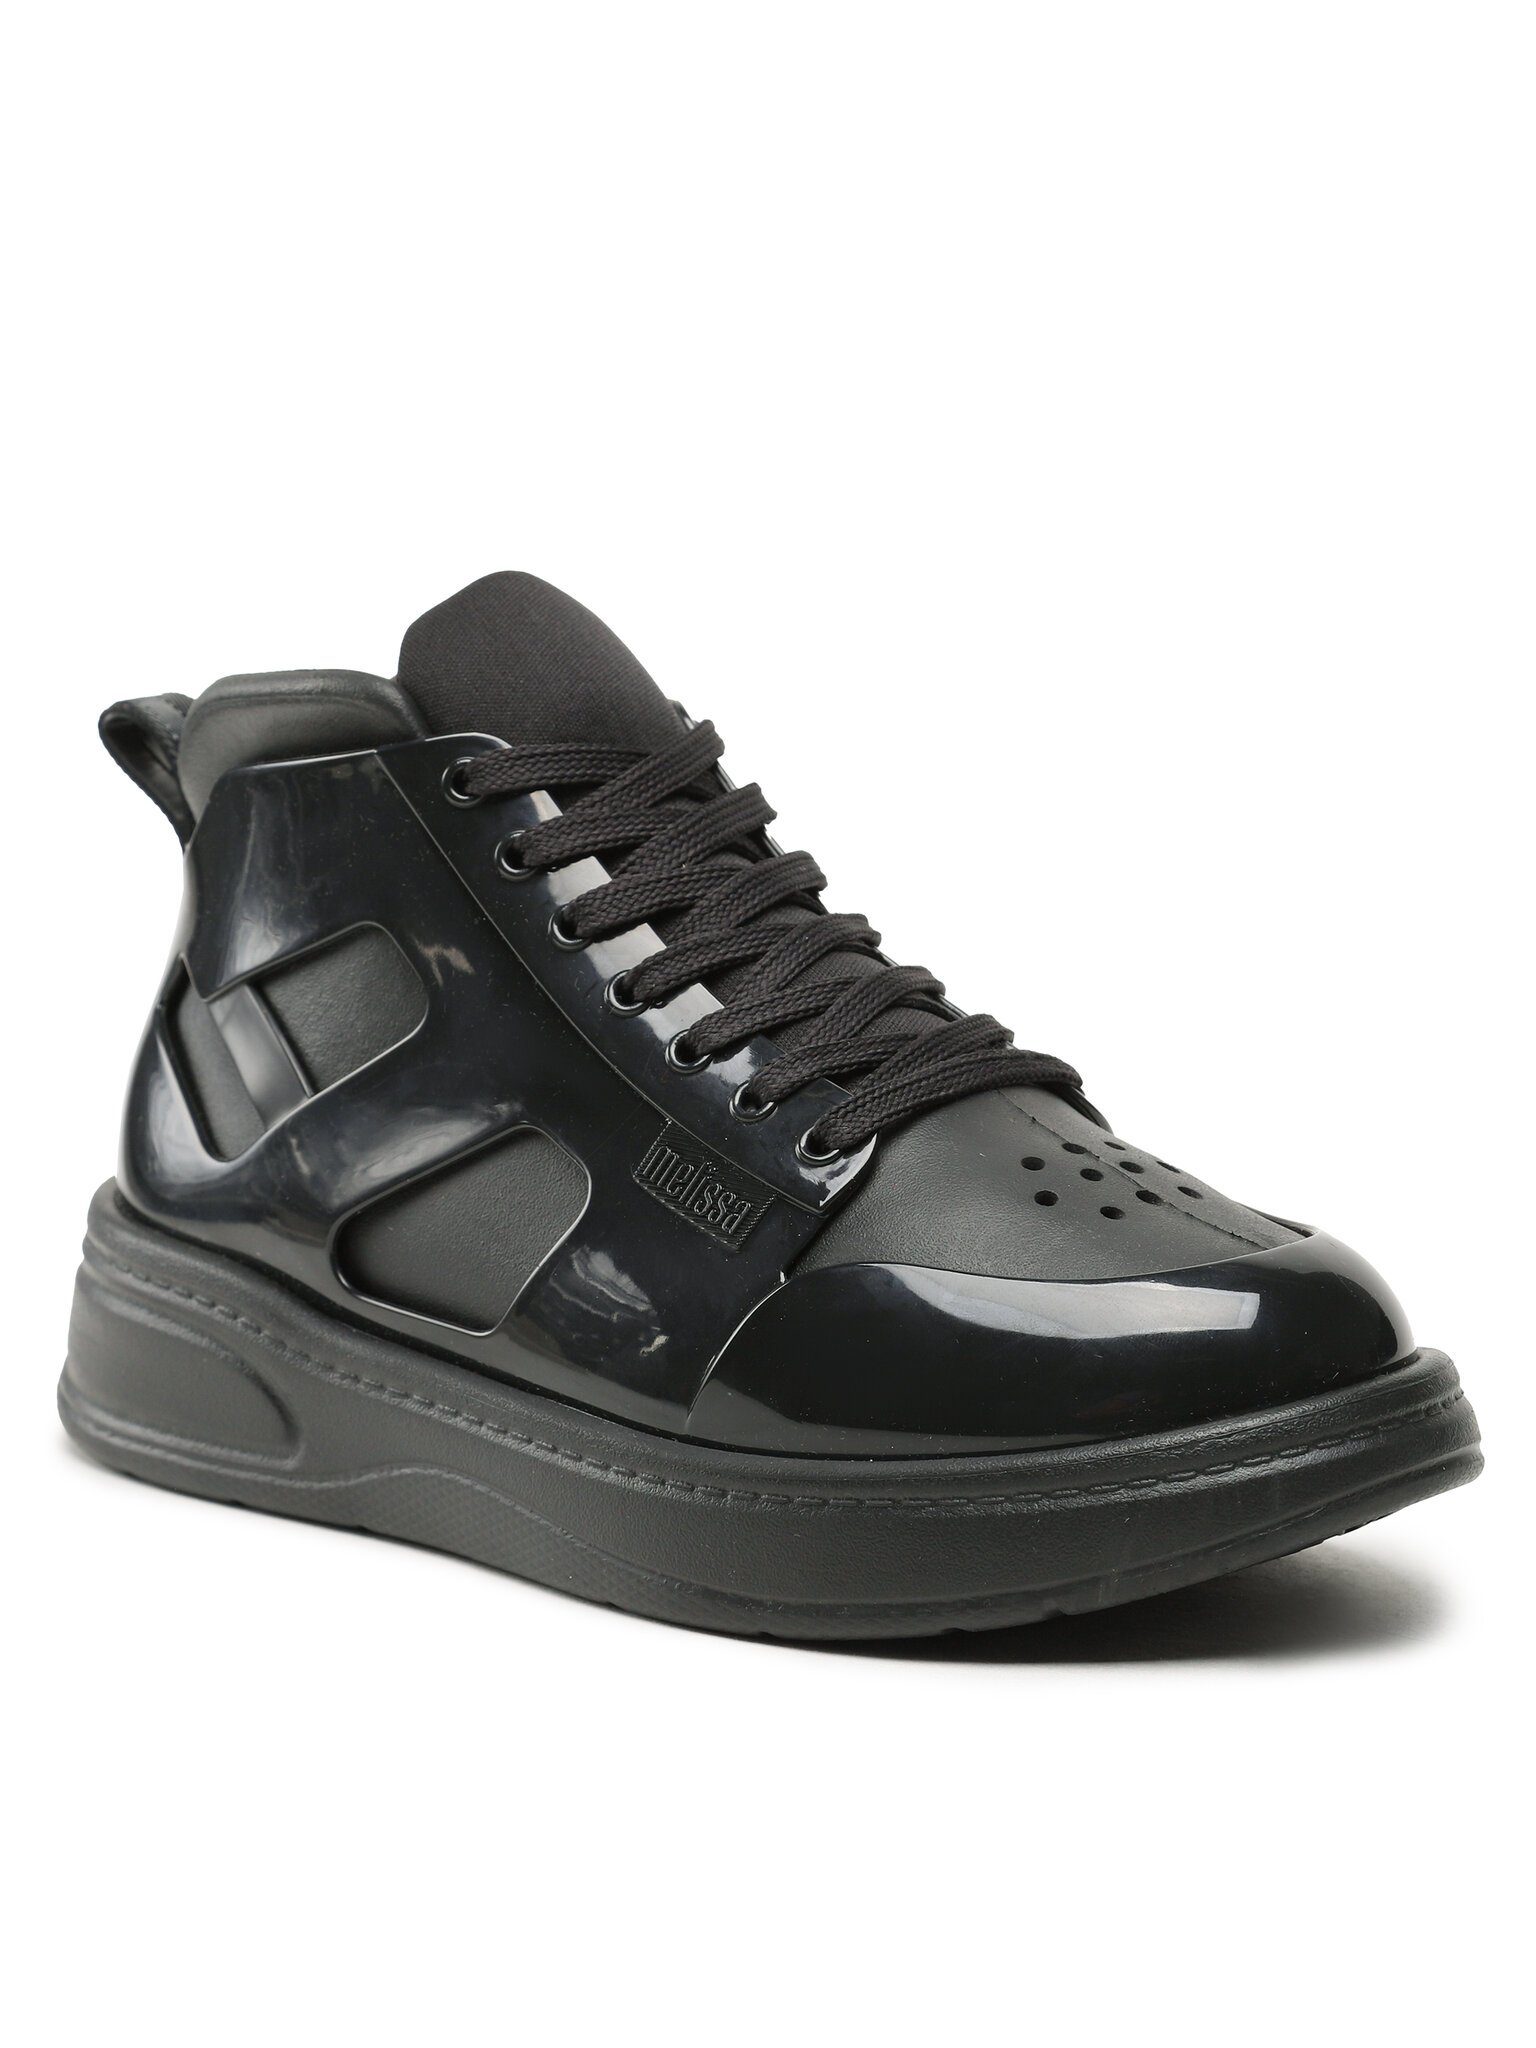 MELISSA Schuhe Melissa Player Sneaker Ad 33909 Black AN906 Bootsschuh